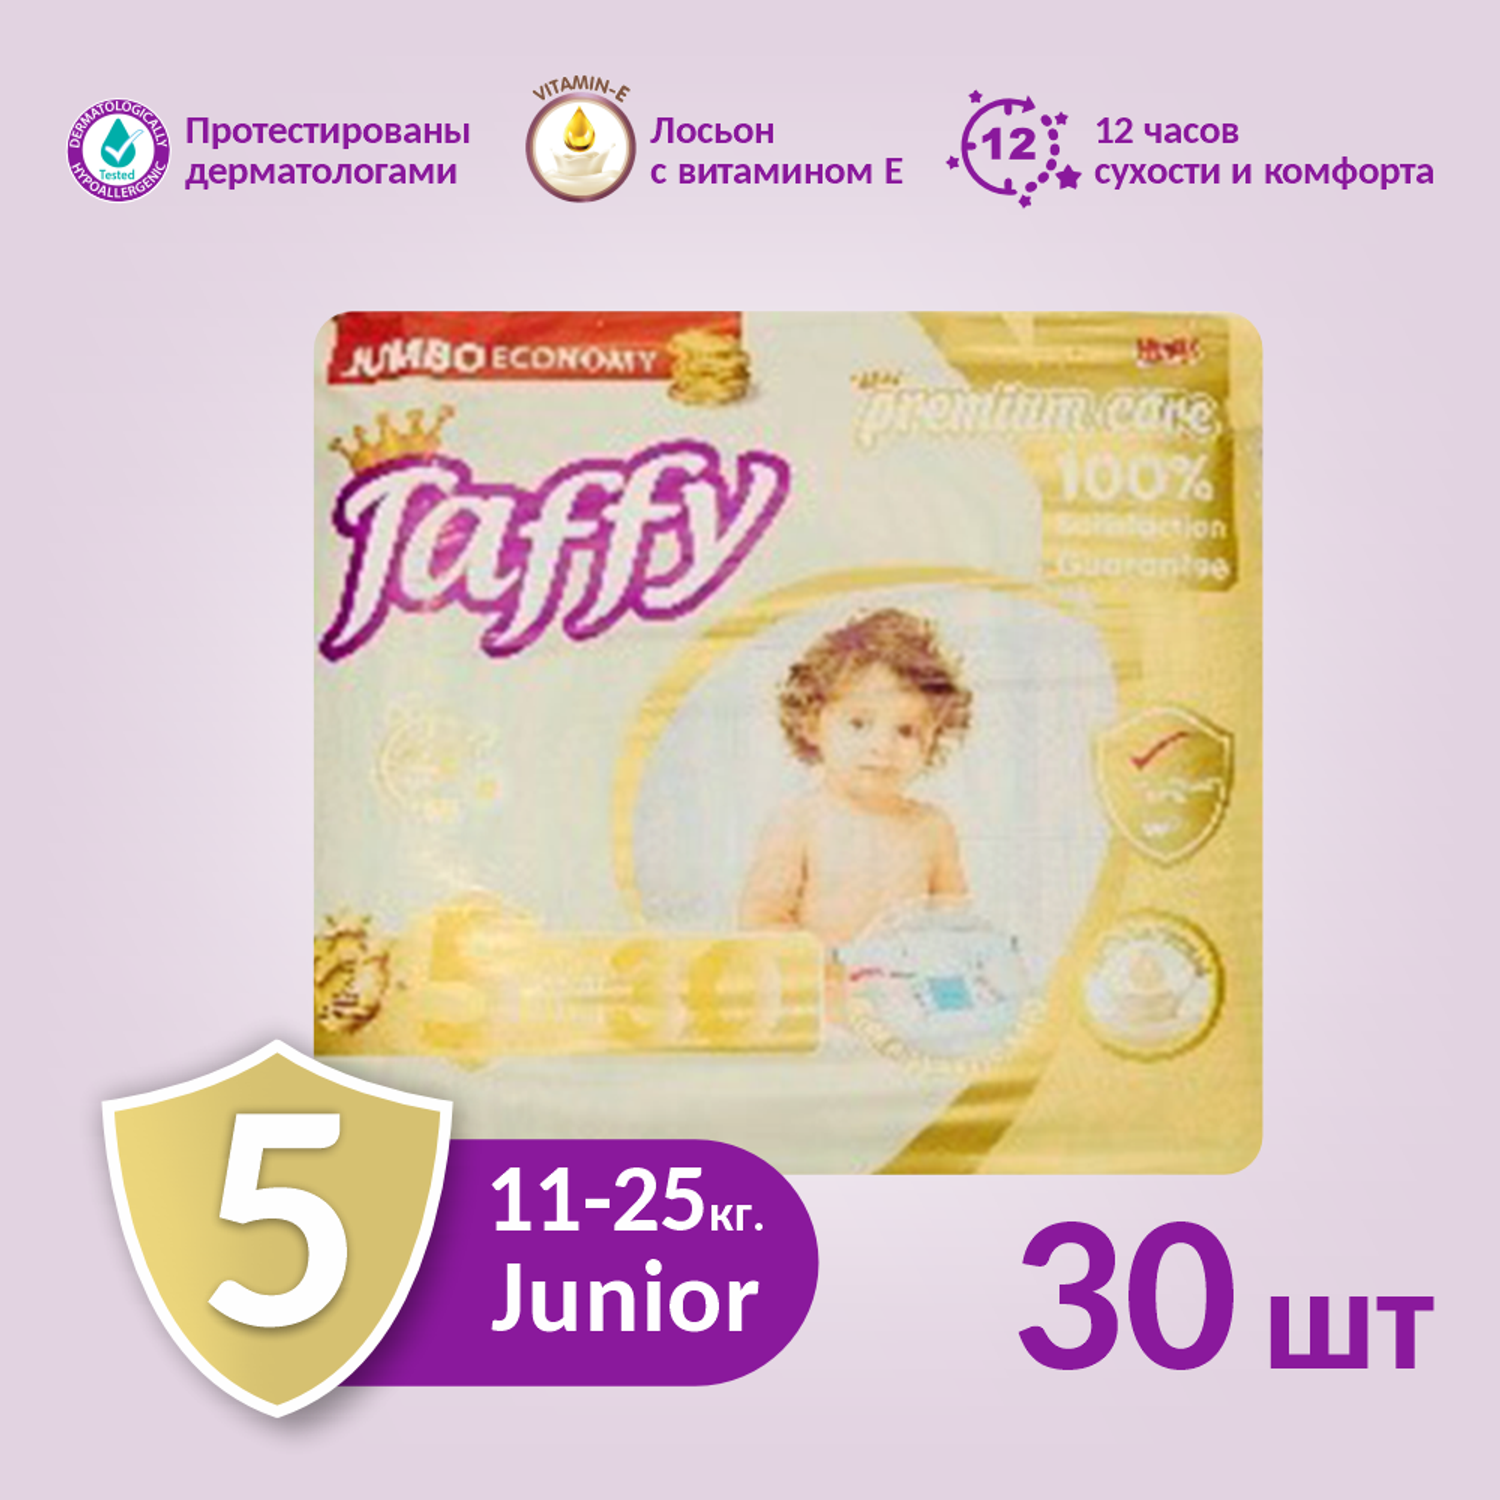 Подгузник одноразовый Taffy Premium Care 5 Junior (11-25 кг.) 30шт. - фото 2